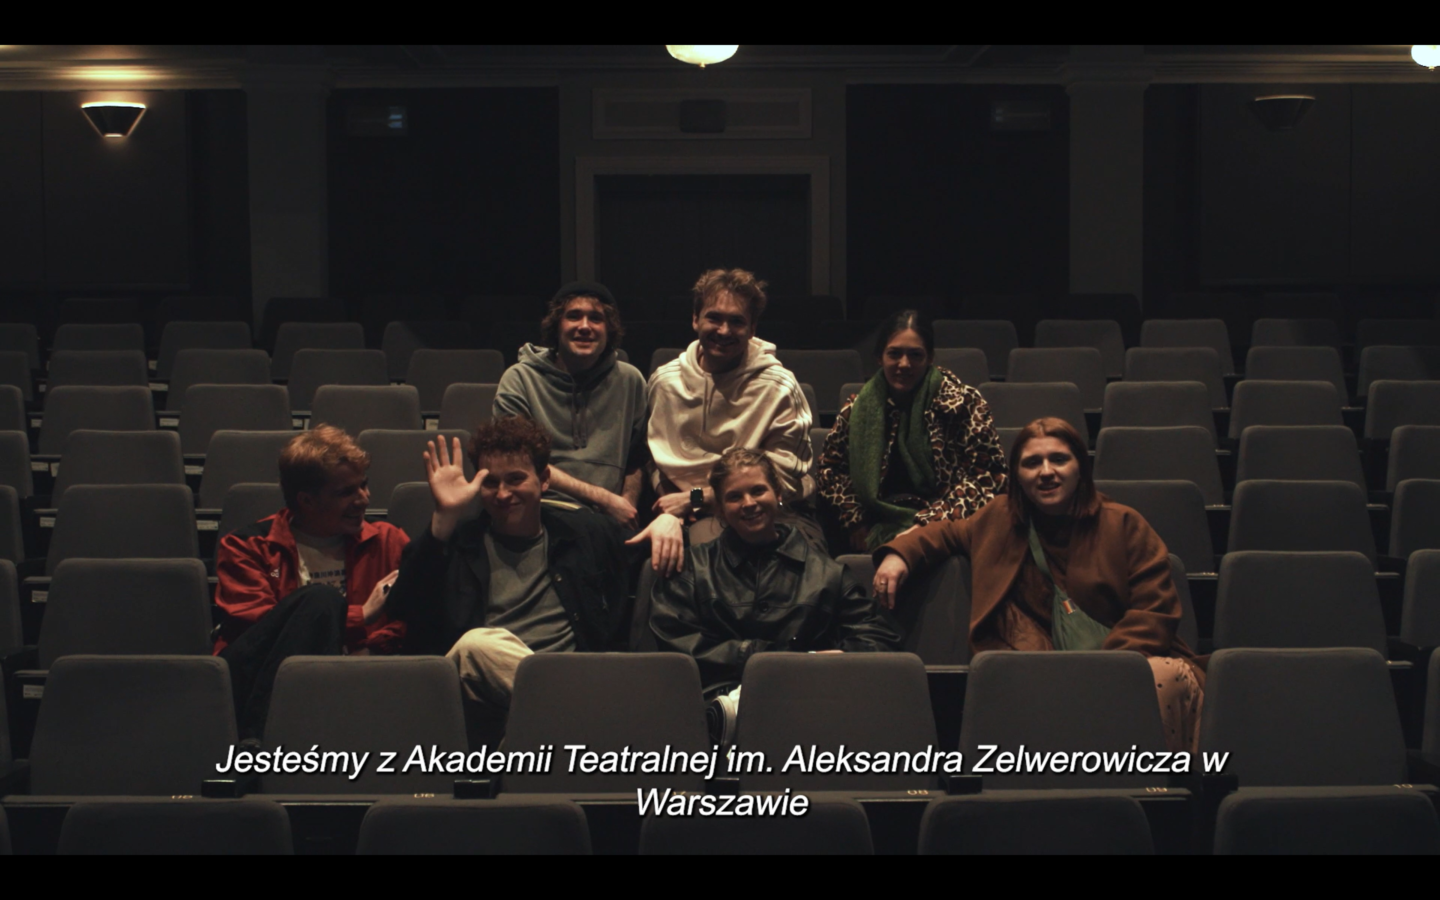 Kadr z filmu. W teatralnej widowni siedzi siedmiu młodych ludzi. Poniżej nich widnieje napis: 